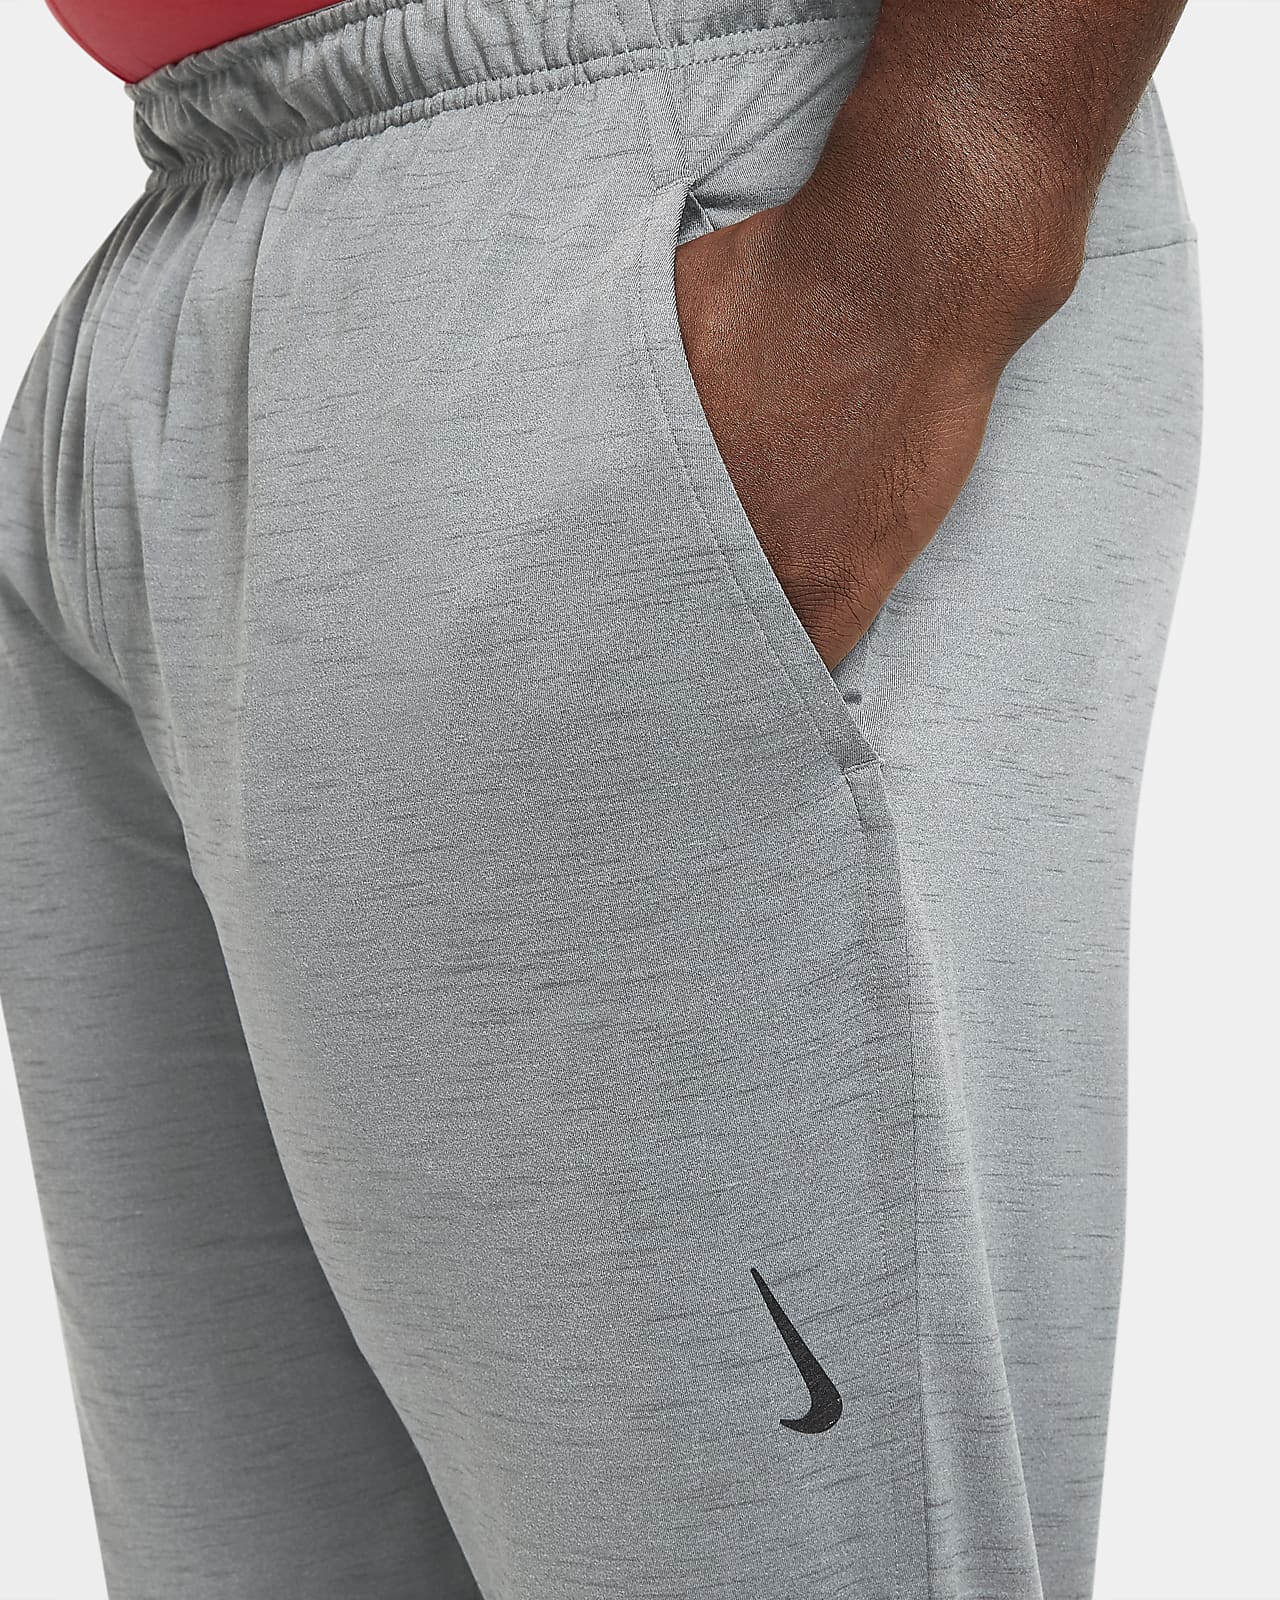 Nike, Yoga Pants Mens, Black/Grey